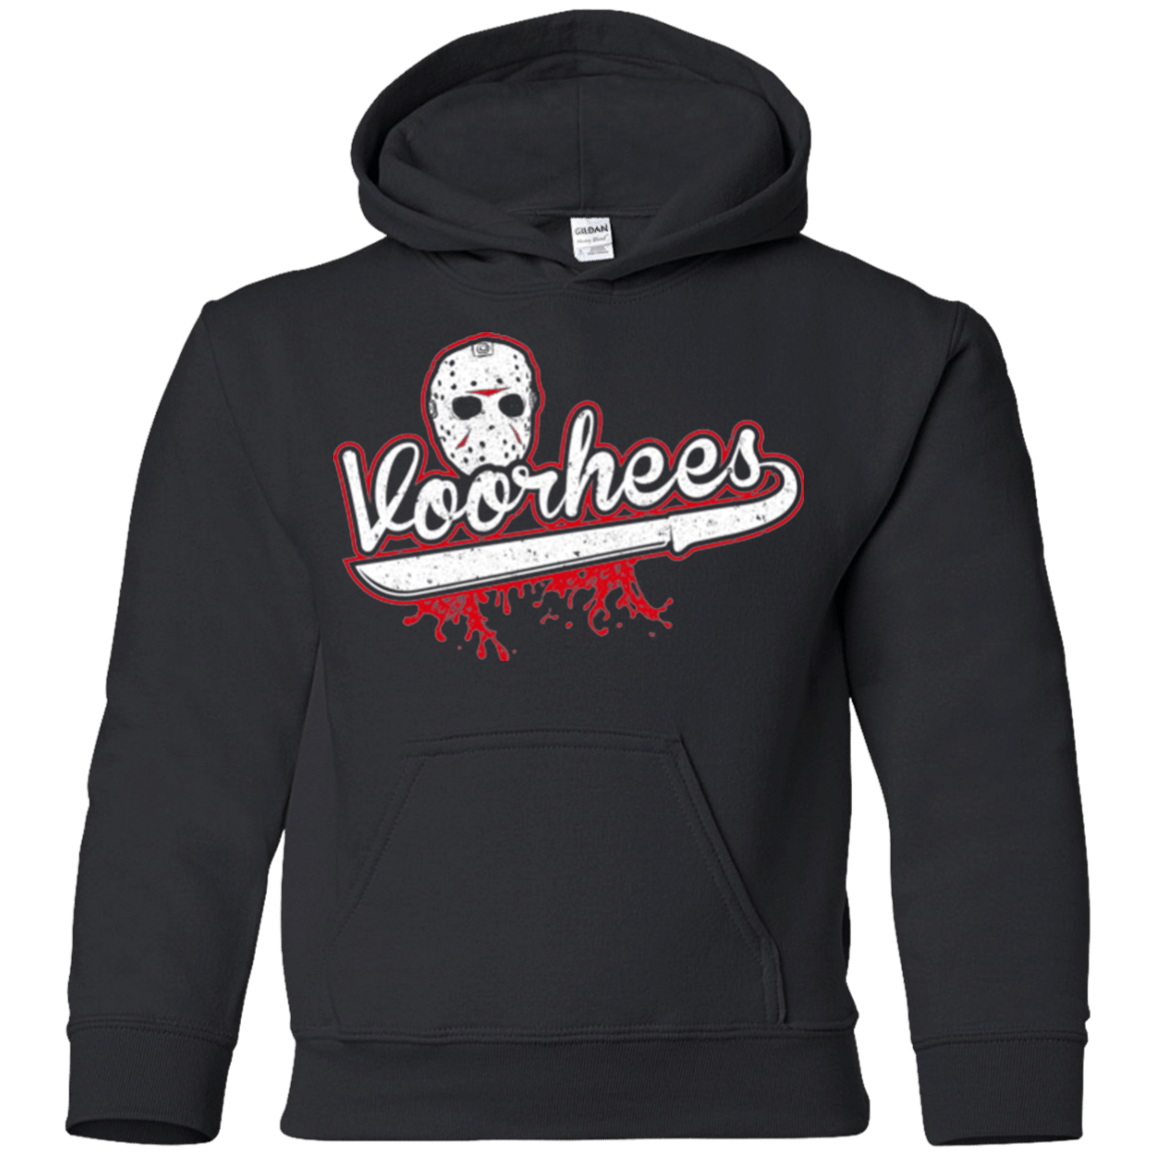 Sweatshirts Black / YS Voorhees Youth Hoodie